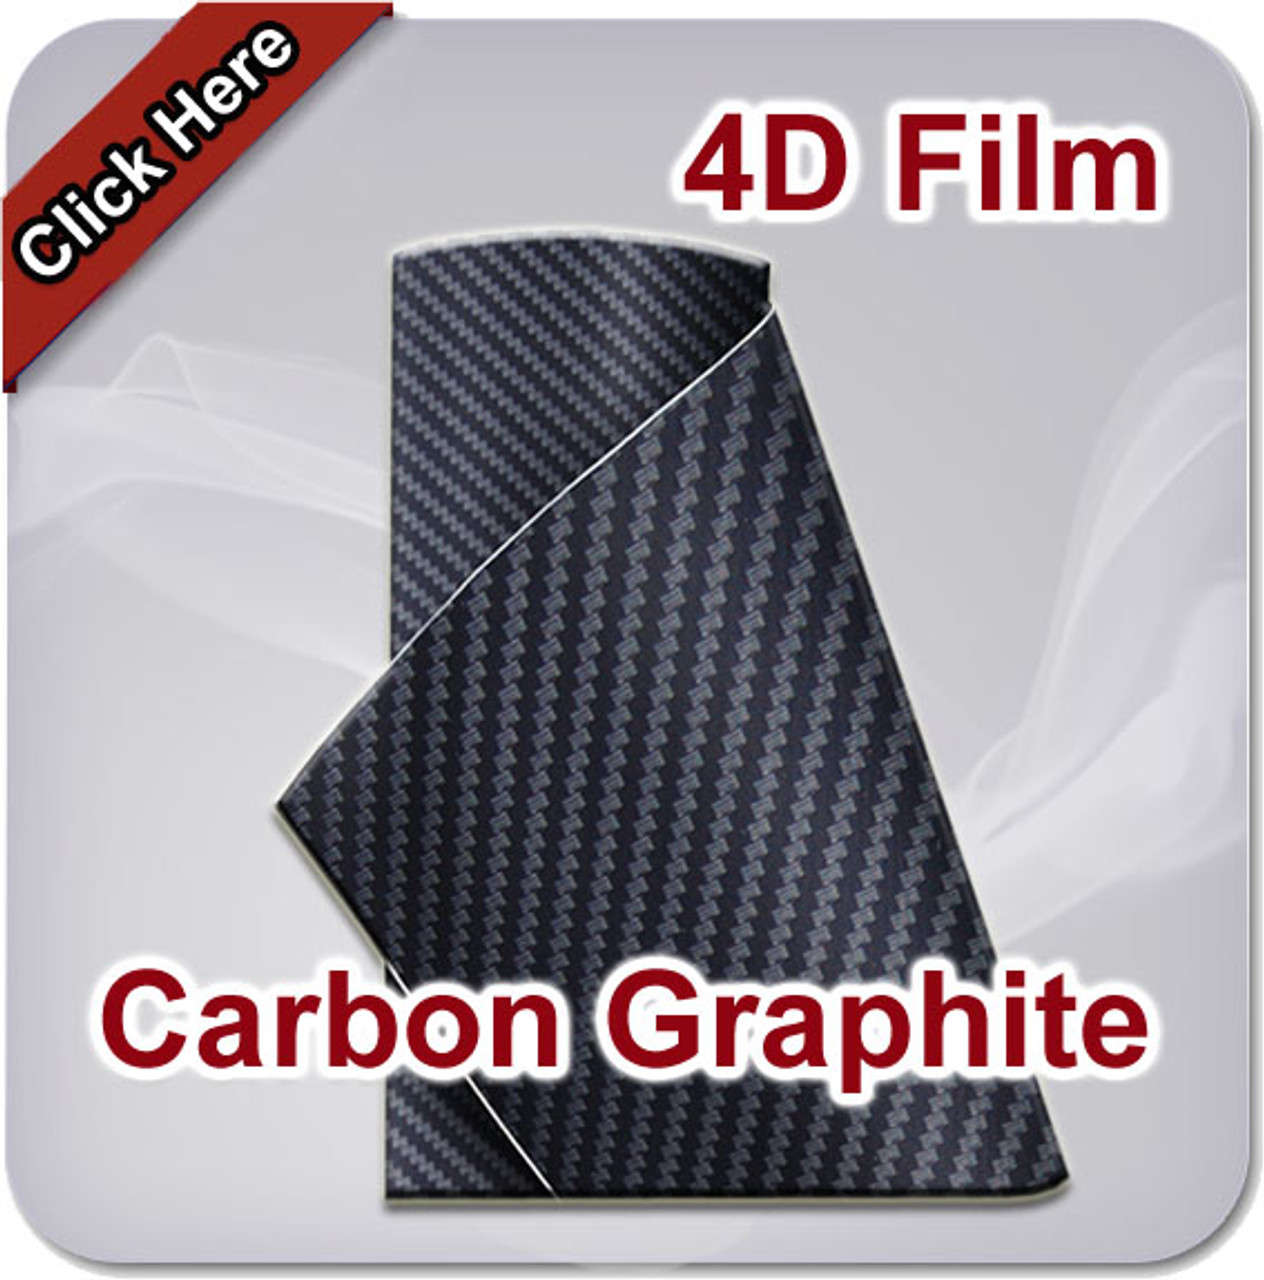 Carbon Graphite Vinyl Film